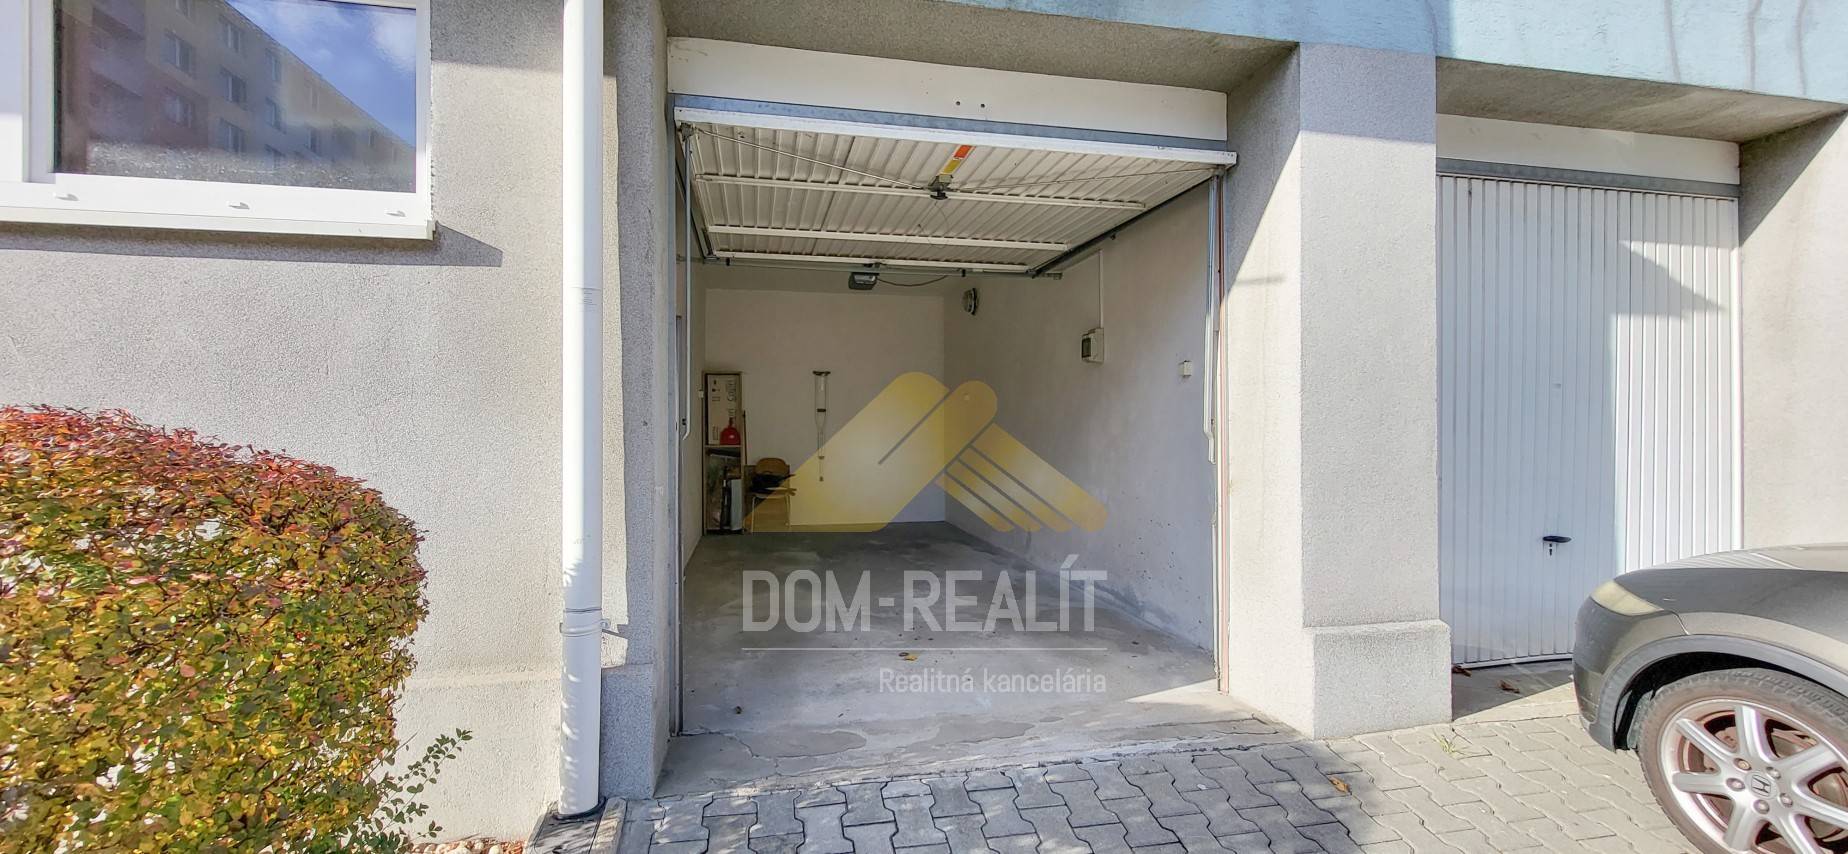 Nehnutelnost DOM-REALÍT ponúka na predaj garáž v bytovom dome na Ďatelinovej ulici